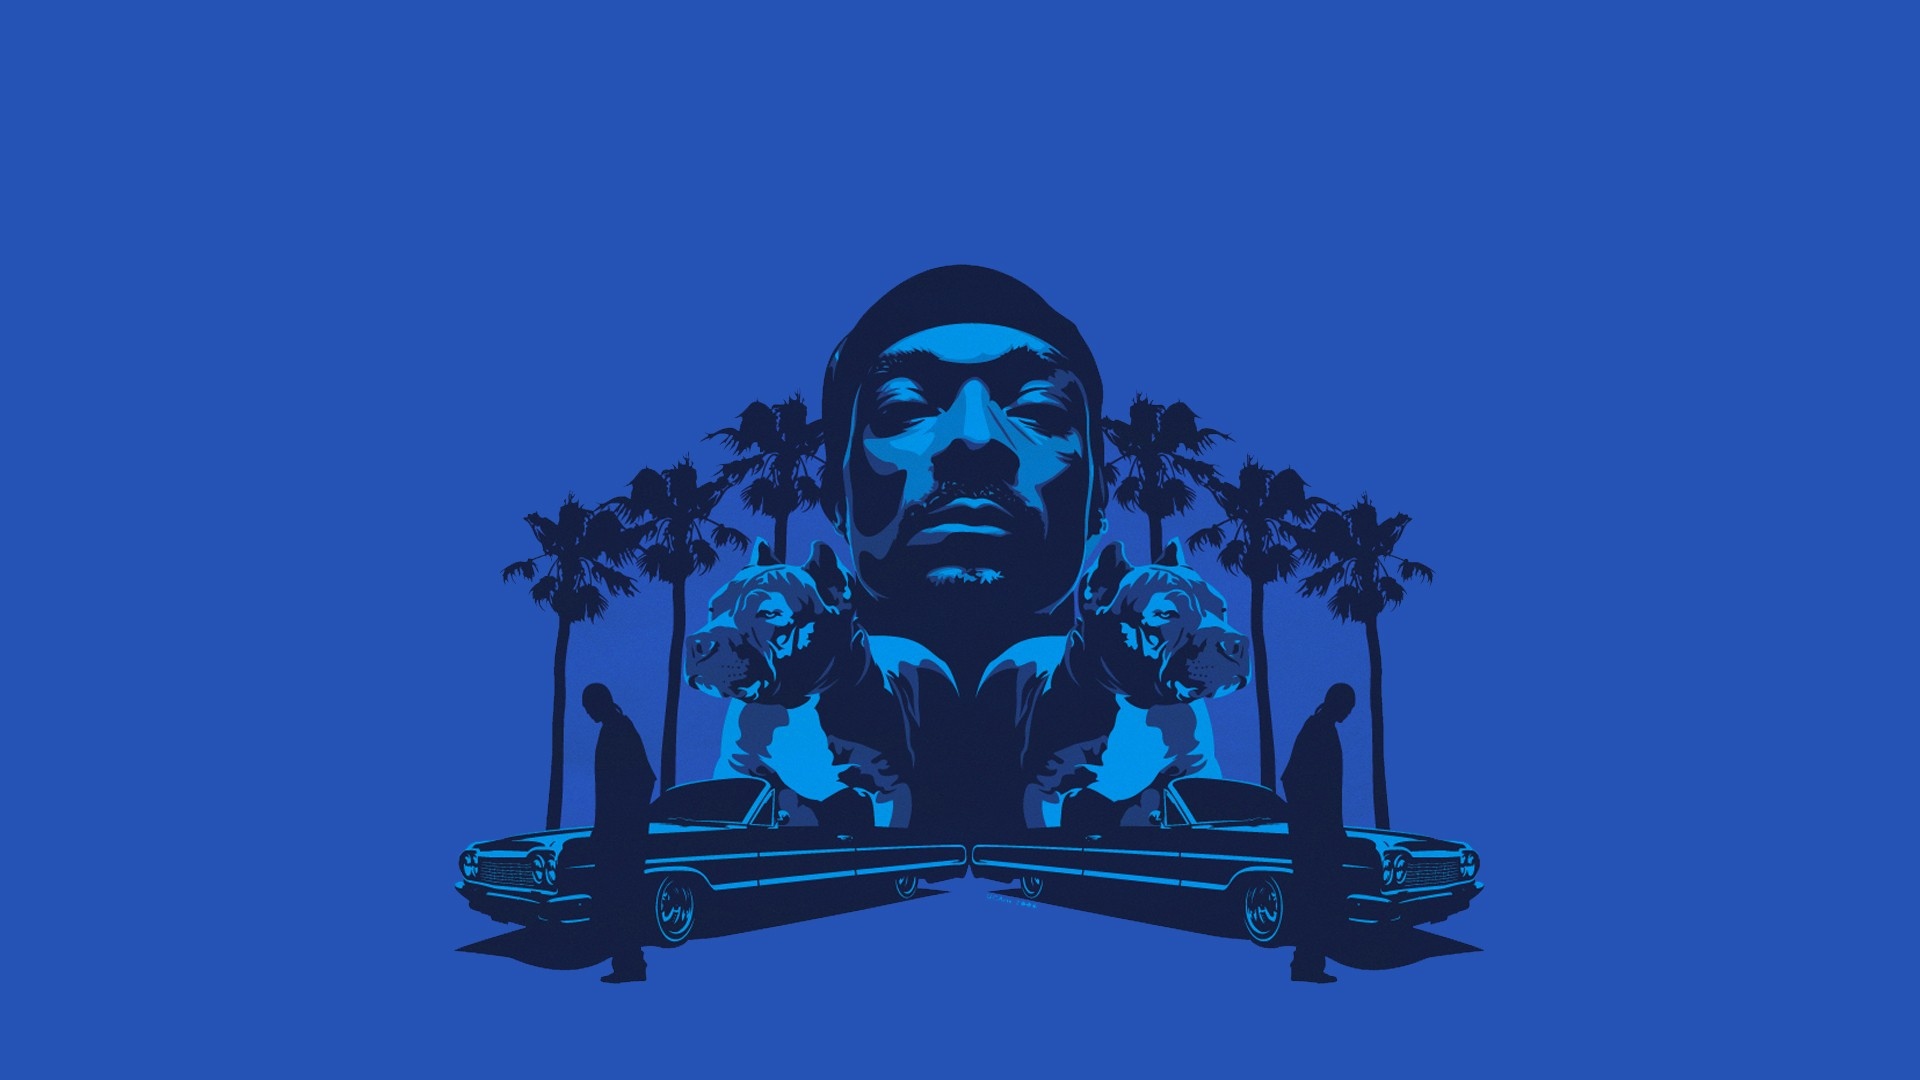 100 Snoop Dogg Wallpapers  Wallpaperscom